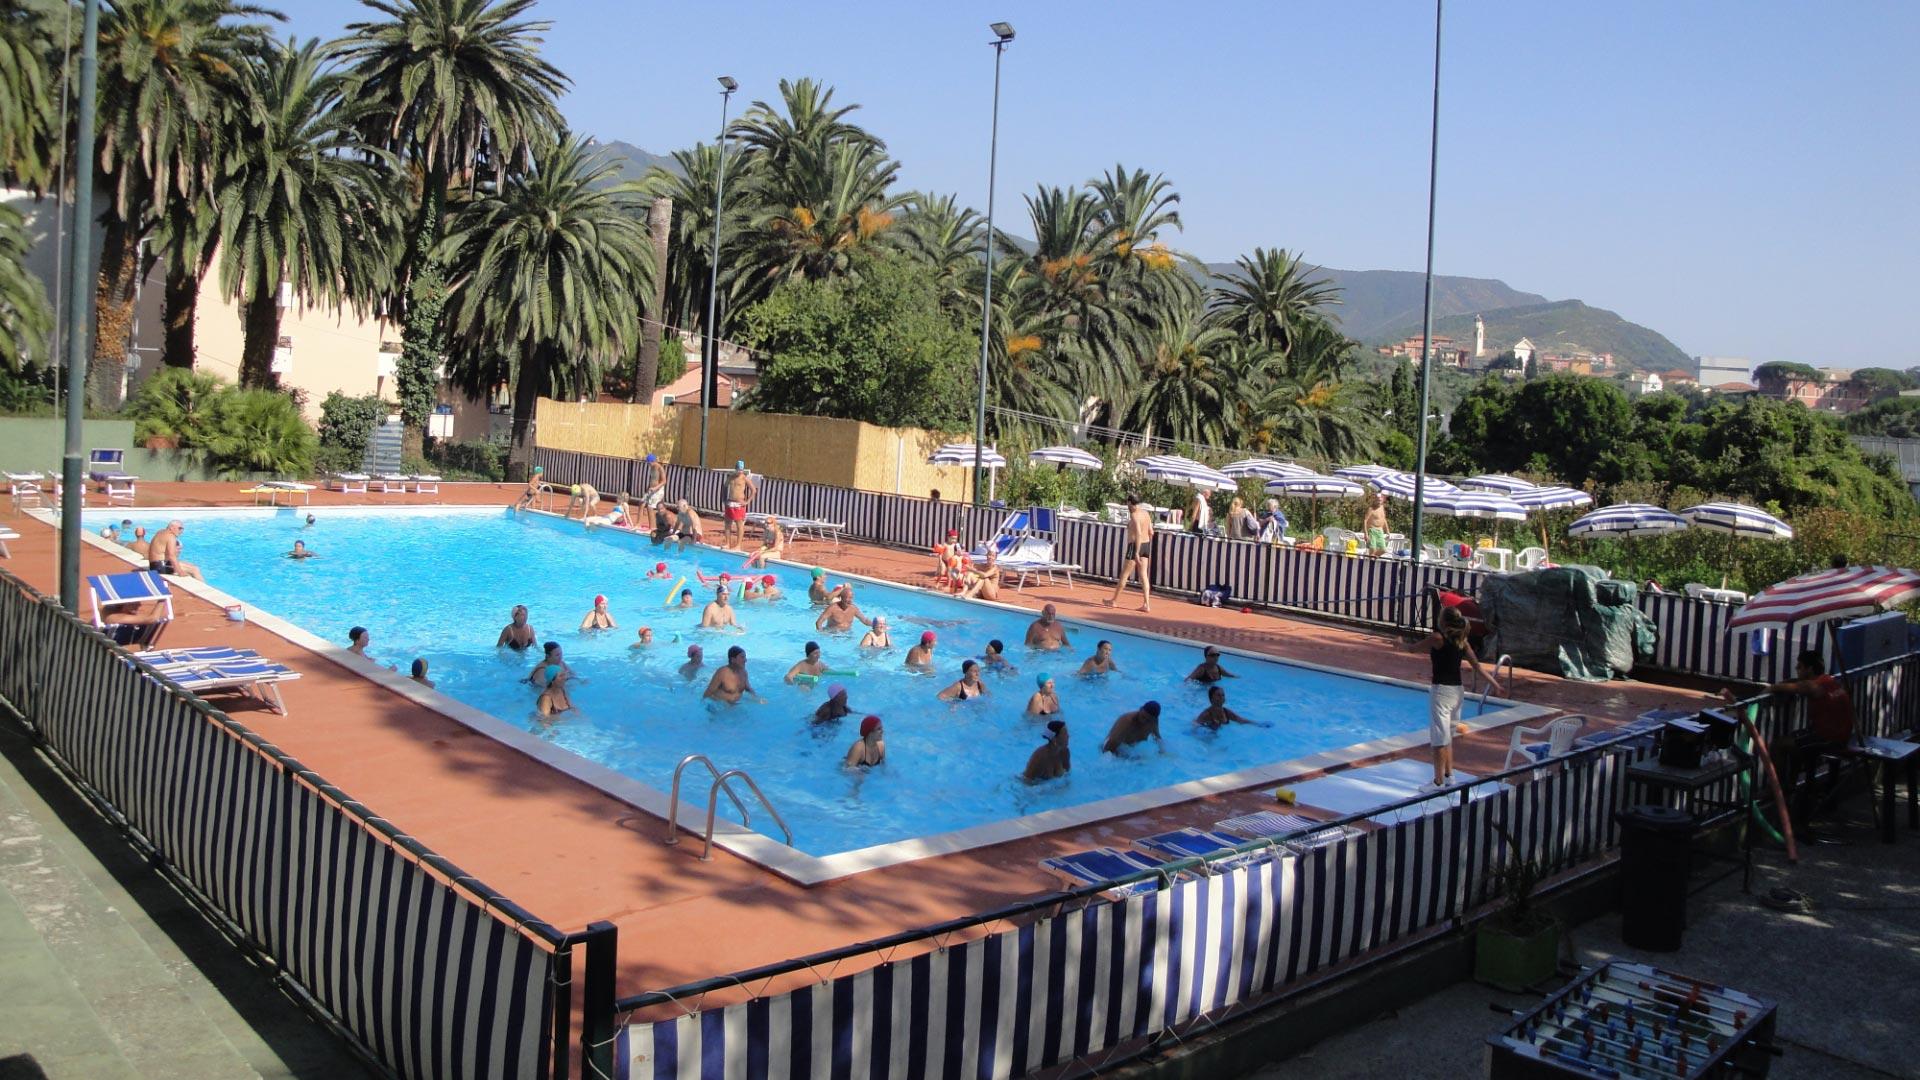 Freibad mit schwimmenden Menschen, umgeben von Palmen.